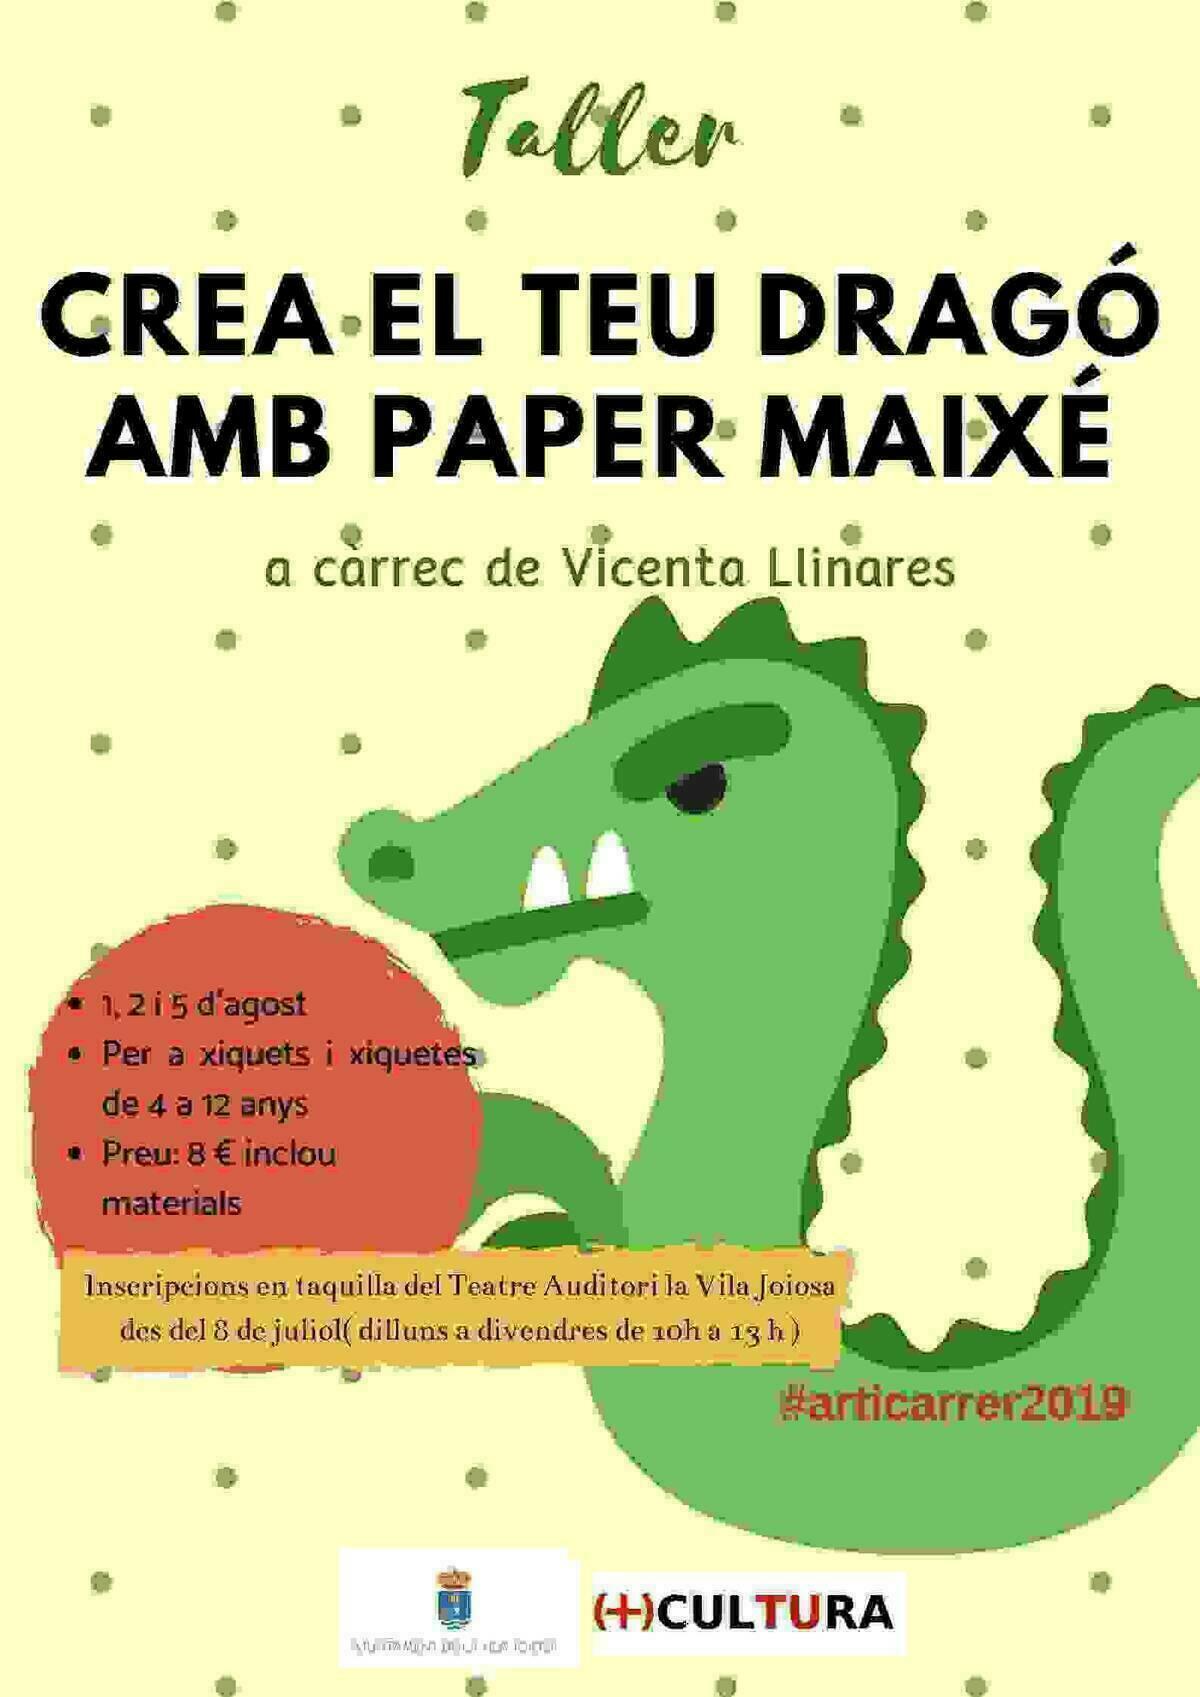 La Vila // Cultura organiza un taller infantil para realizar dragones en papel maché